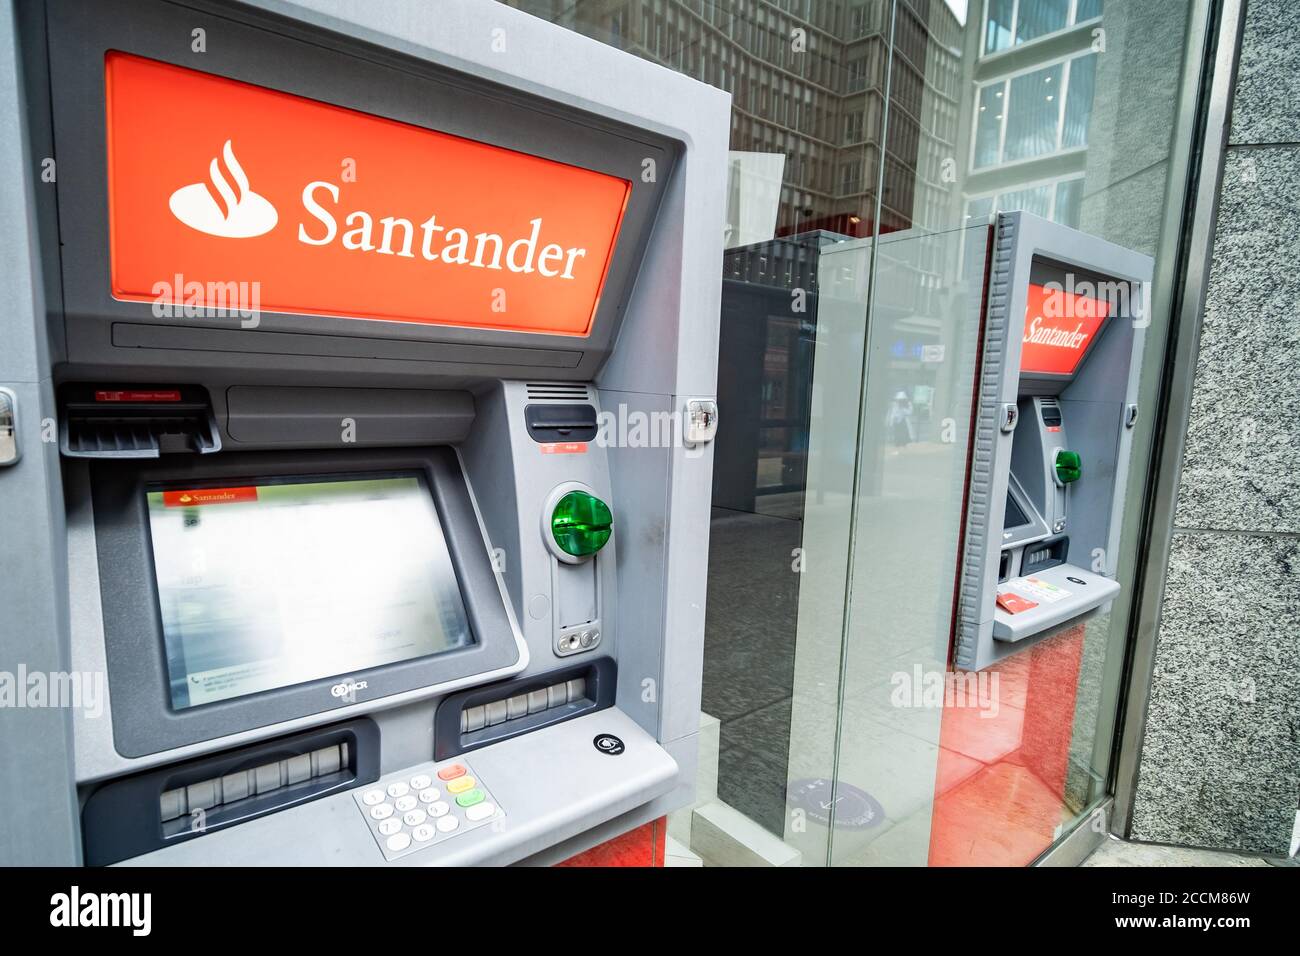 LONDON- Santander Geldautomat auf West-London Niederlassung- ein britischer bank im Besitz der spanischen Santander-Gruppe Stockfoto